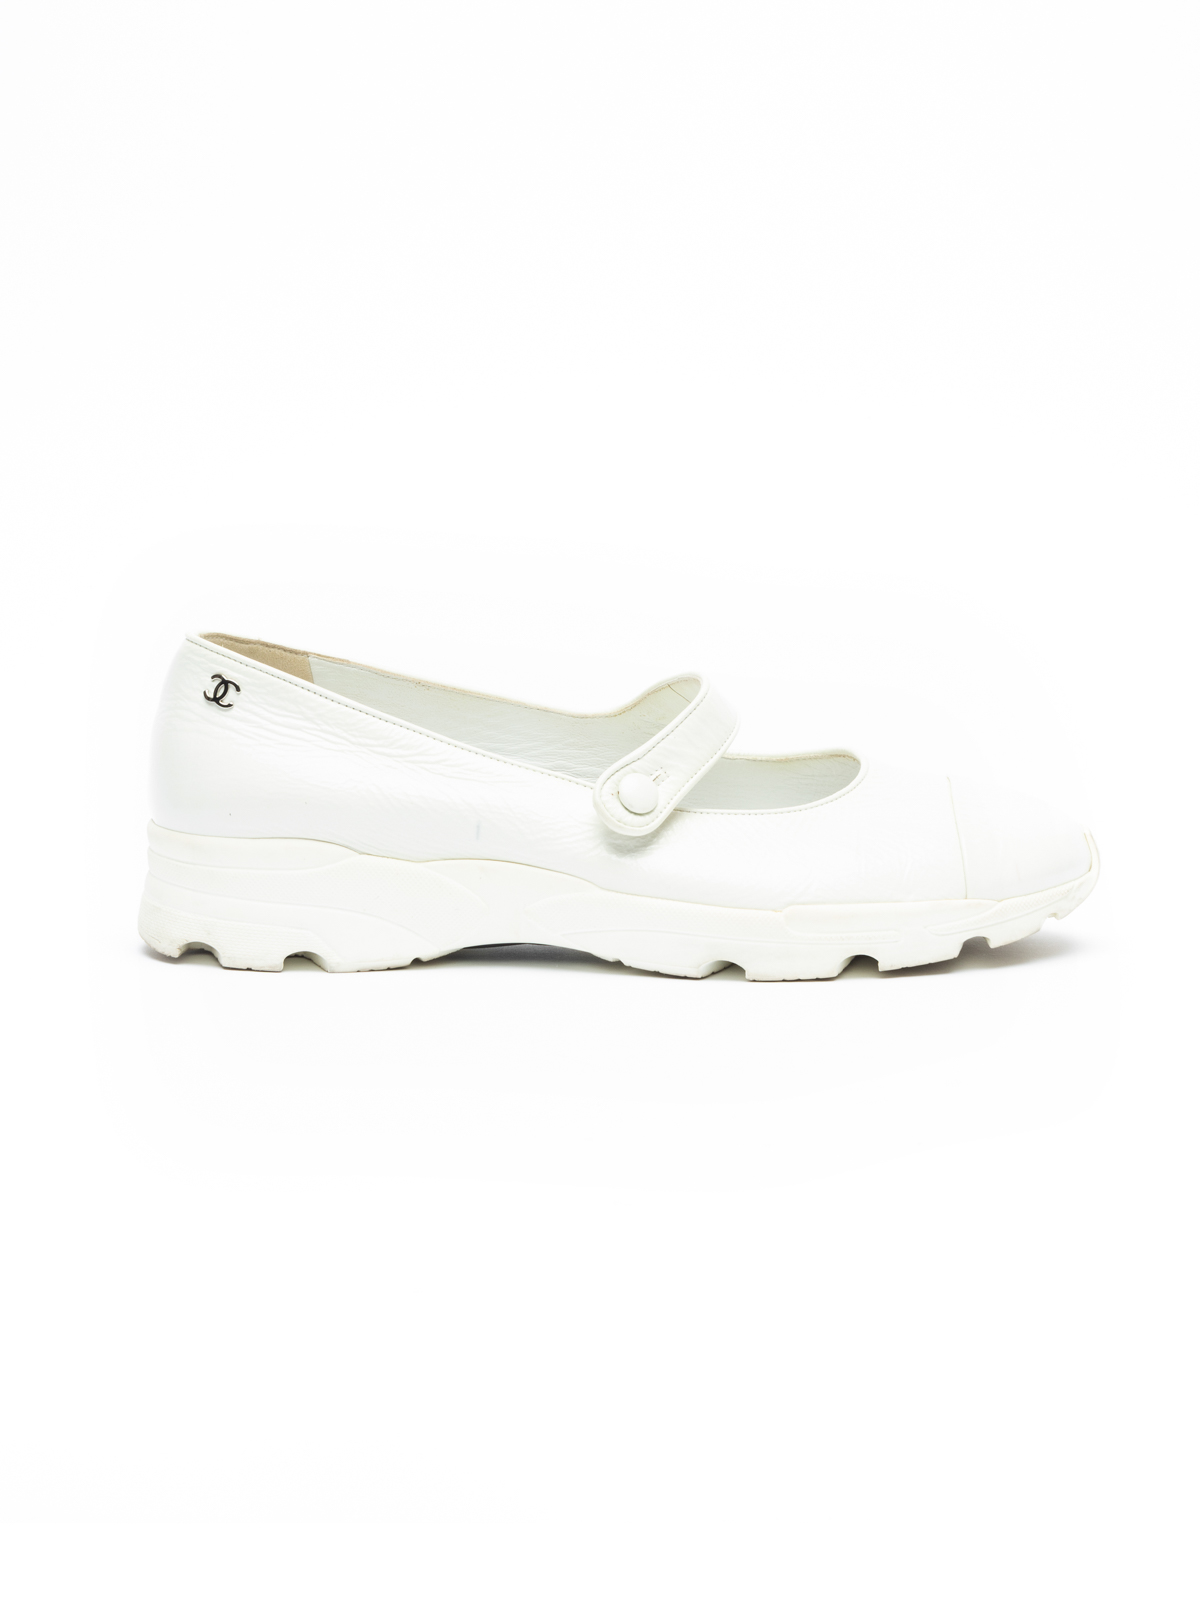 Chanel White Patent Walking Strap Shoes